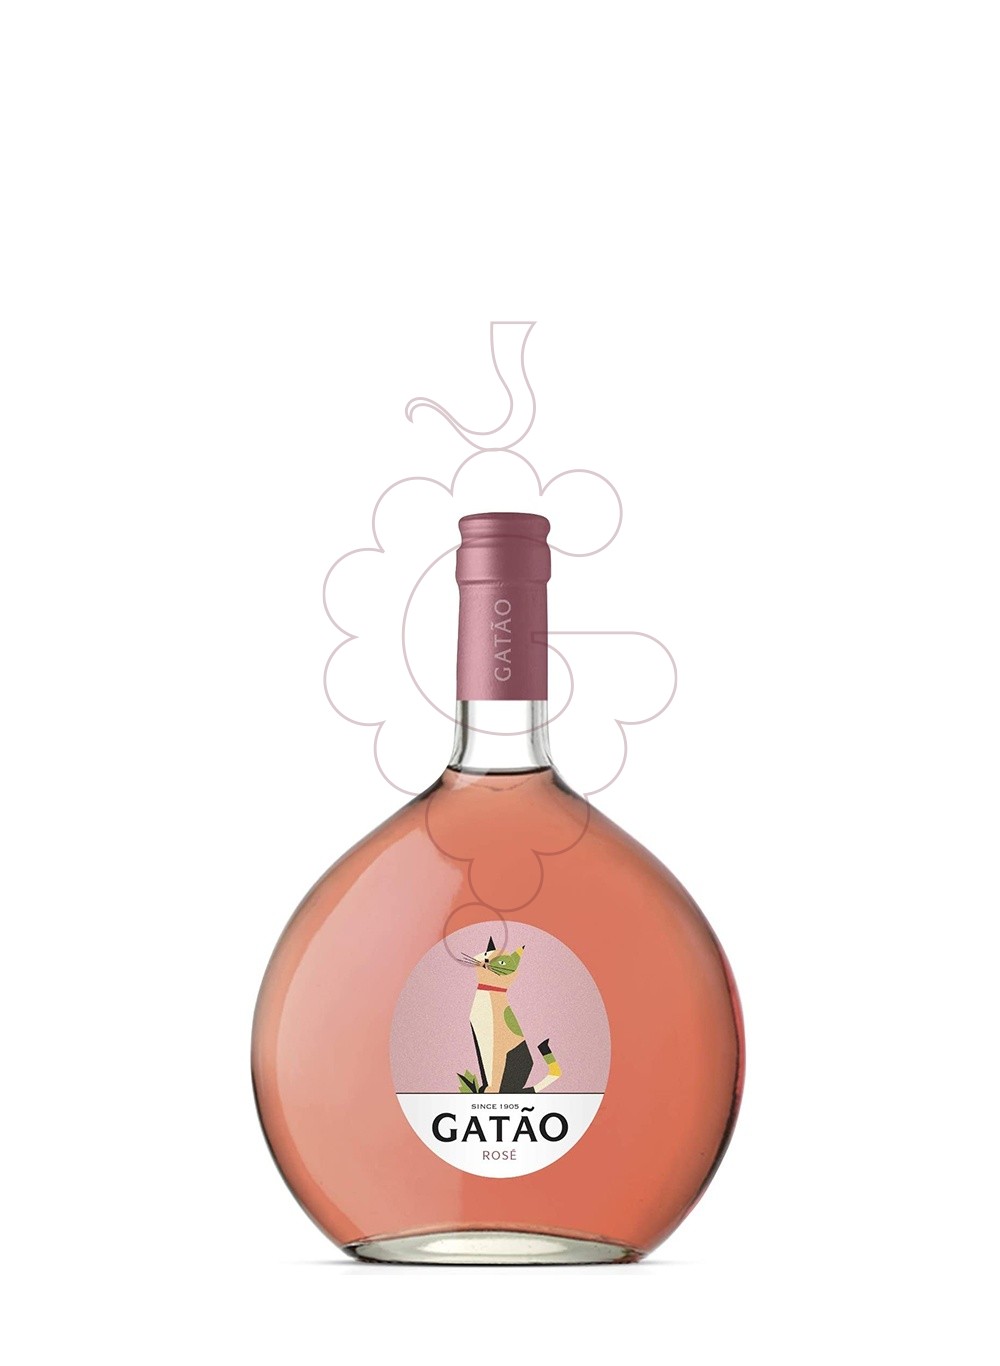 Foto Gatao Rose vino rosado